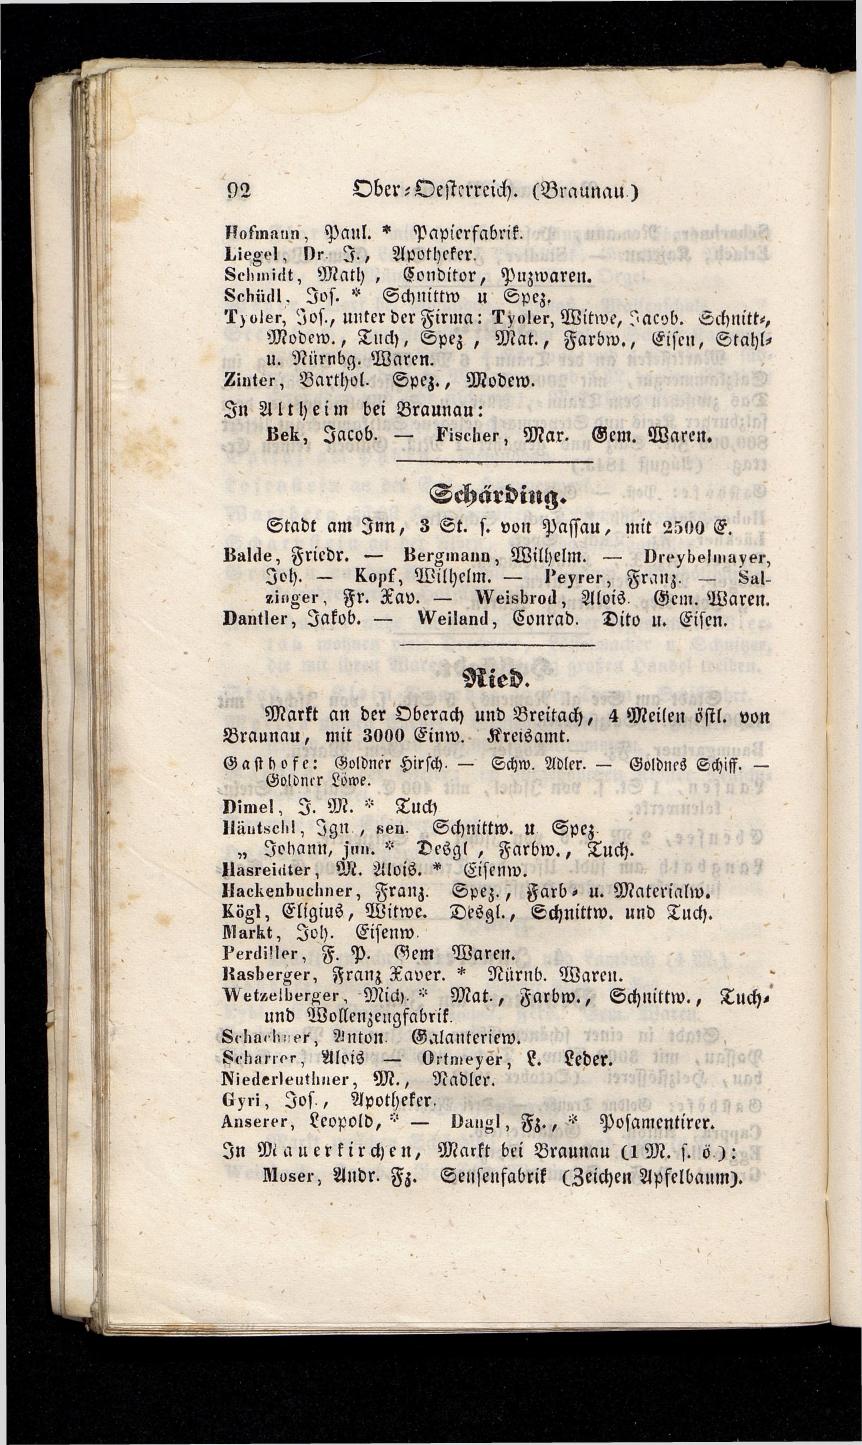 Grosses Adressbuch der Kaufleute. No. 13. Oesterreich ober u. unter der Enns 1844 - Seite 96